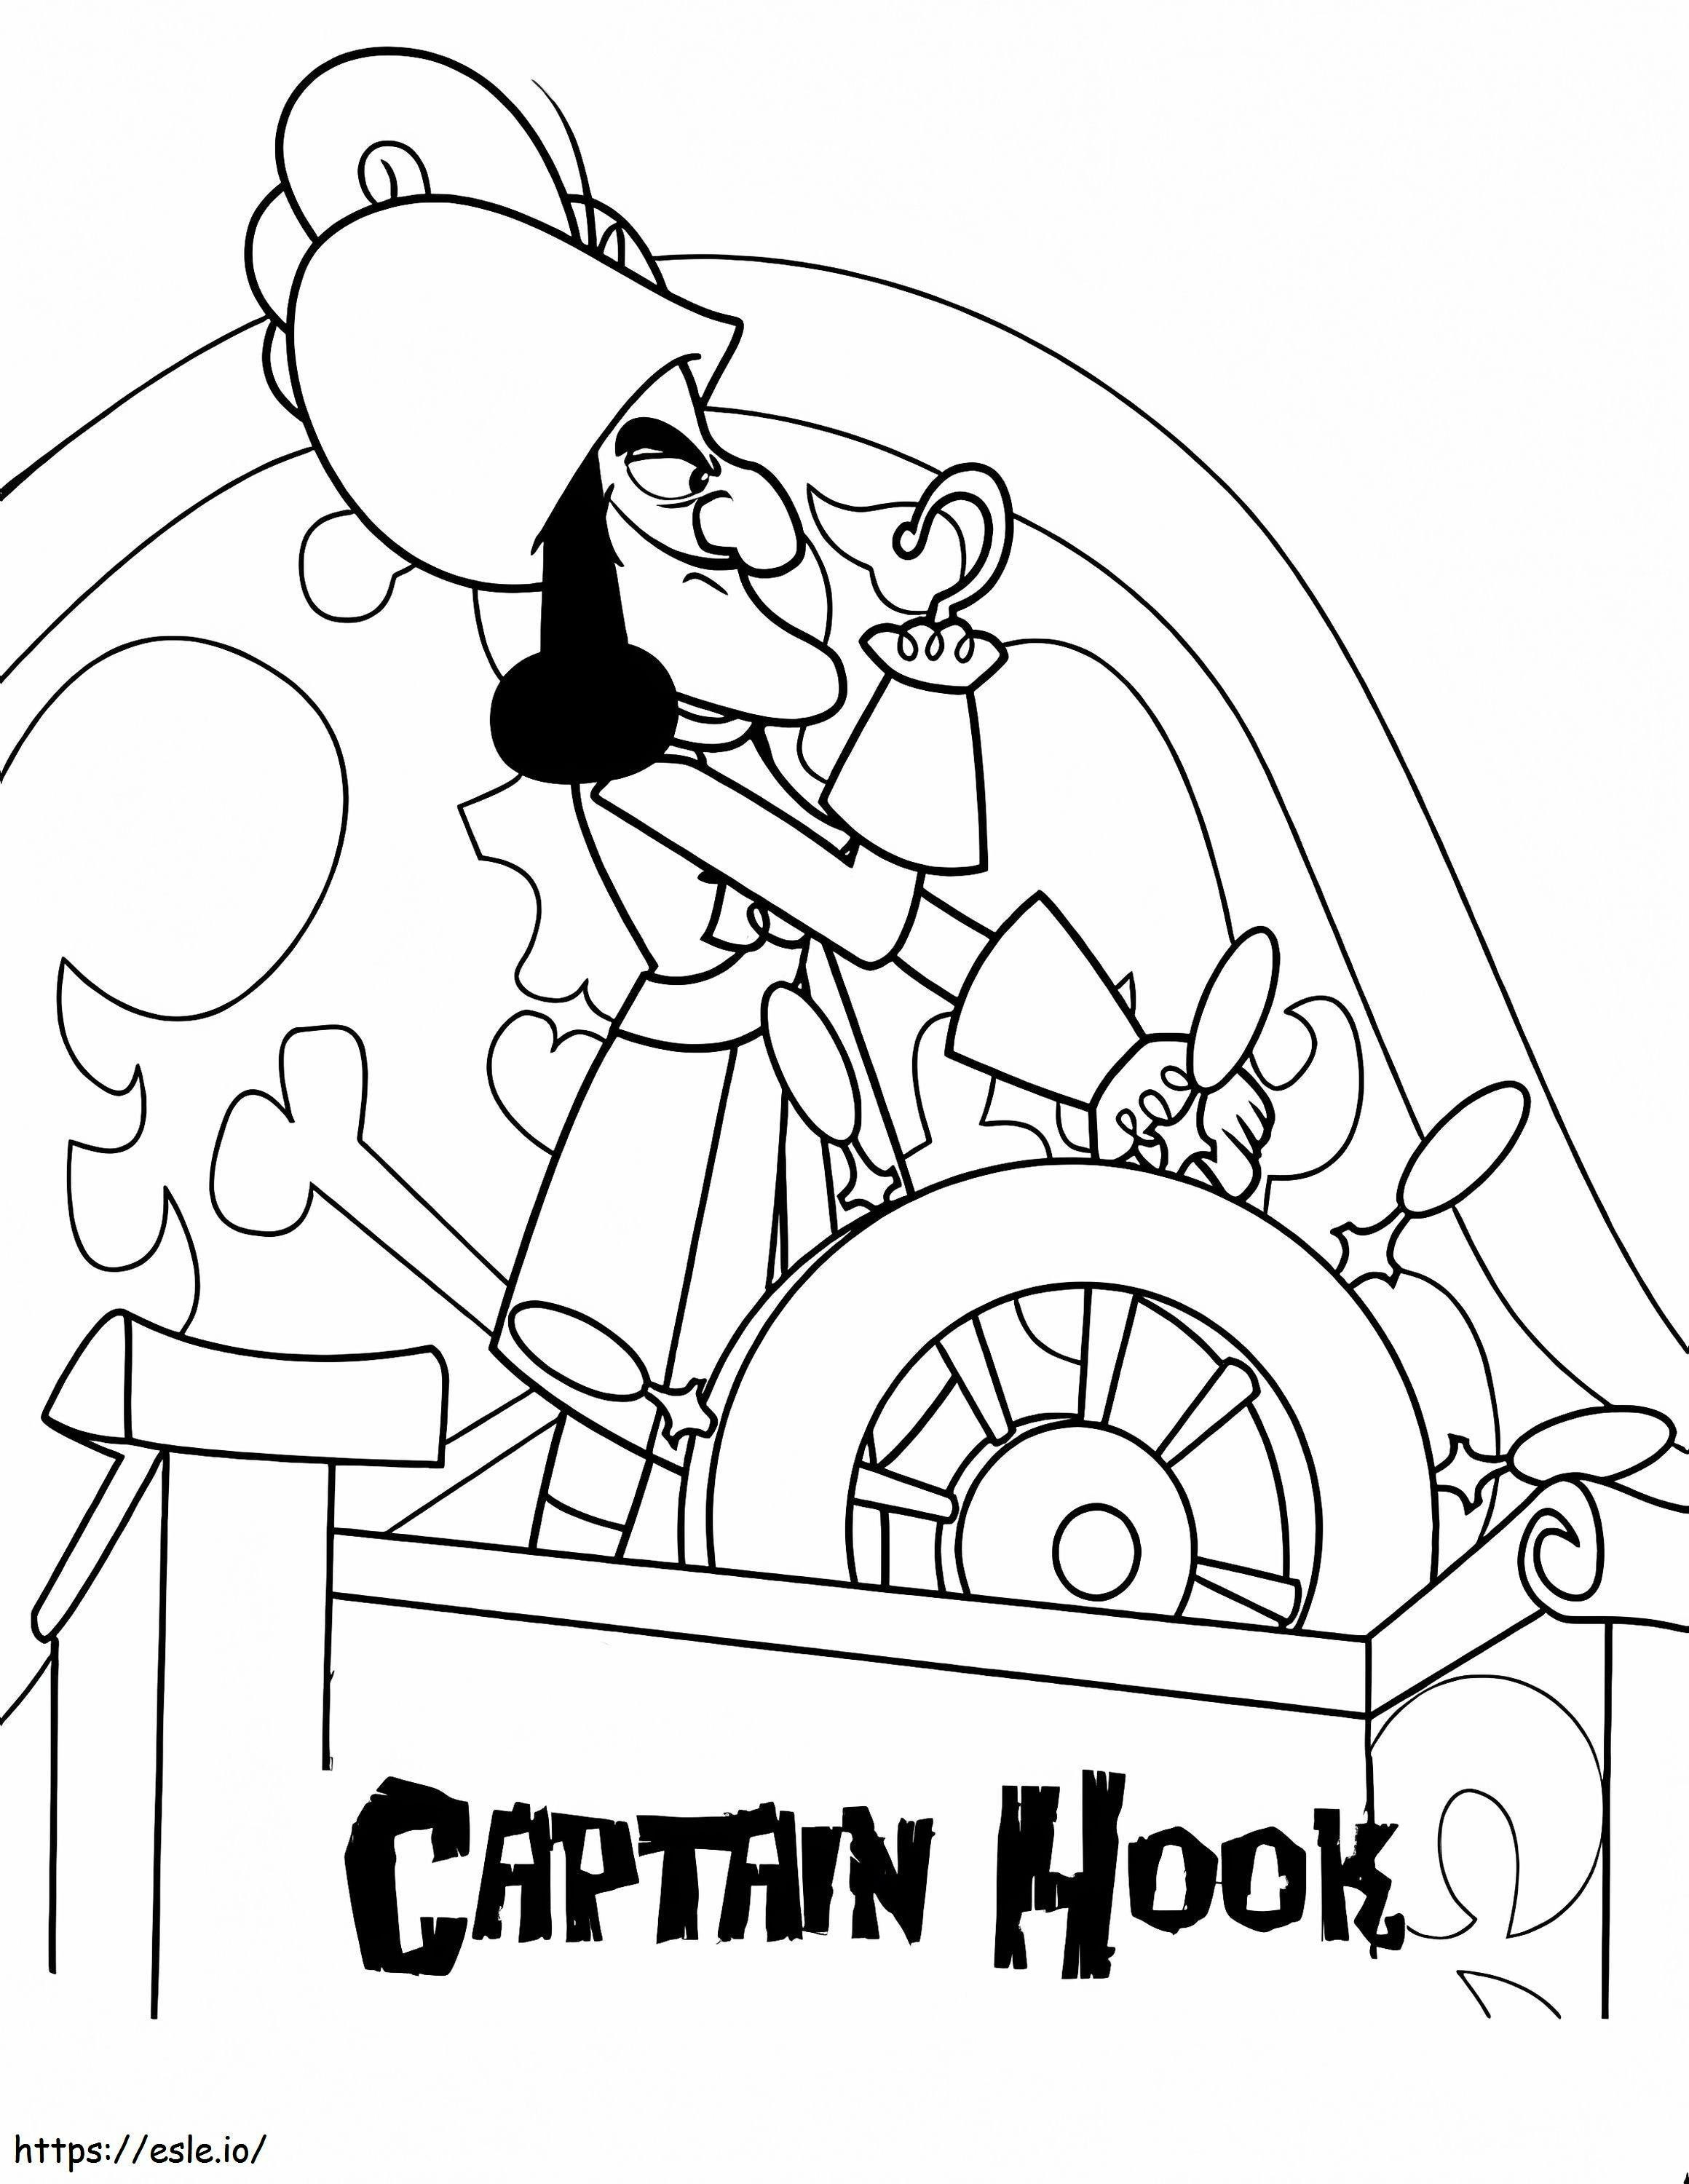 1552289870 Jake și Pirații Neverland Captain Hook Jake și Pirații Neverland Captain Hook Color Bros Road Runner Poze de colorat de colorat